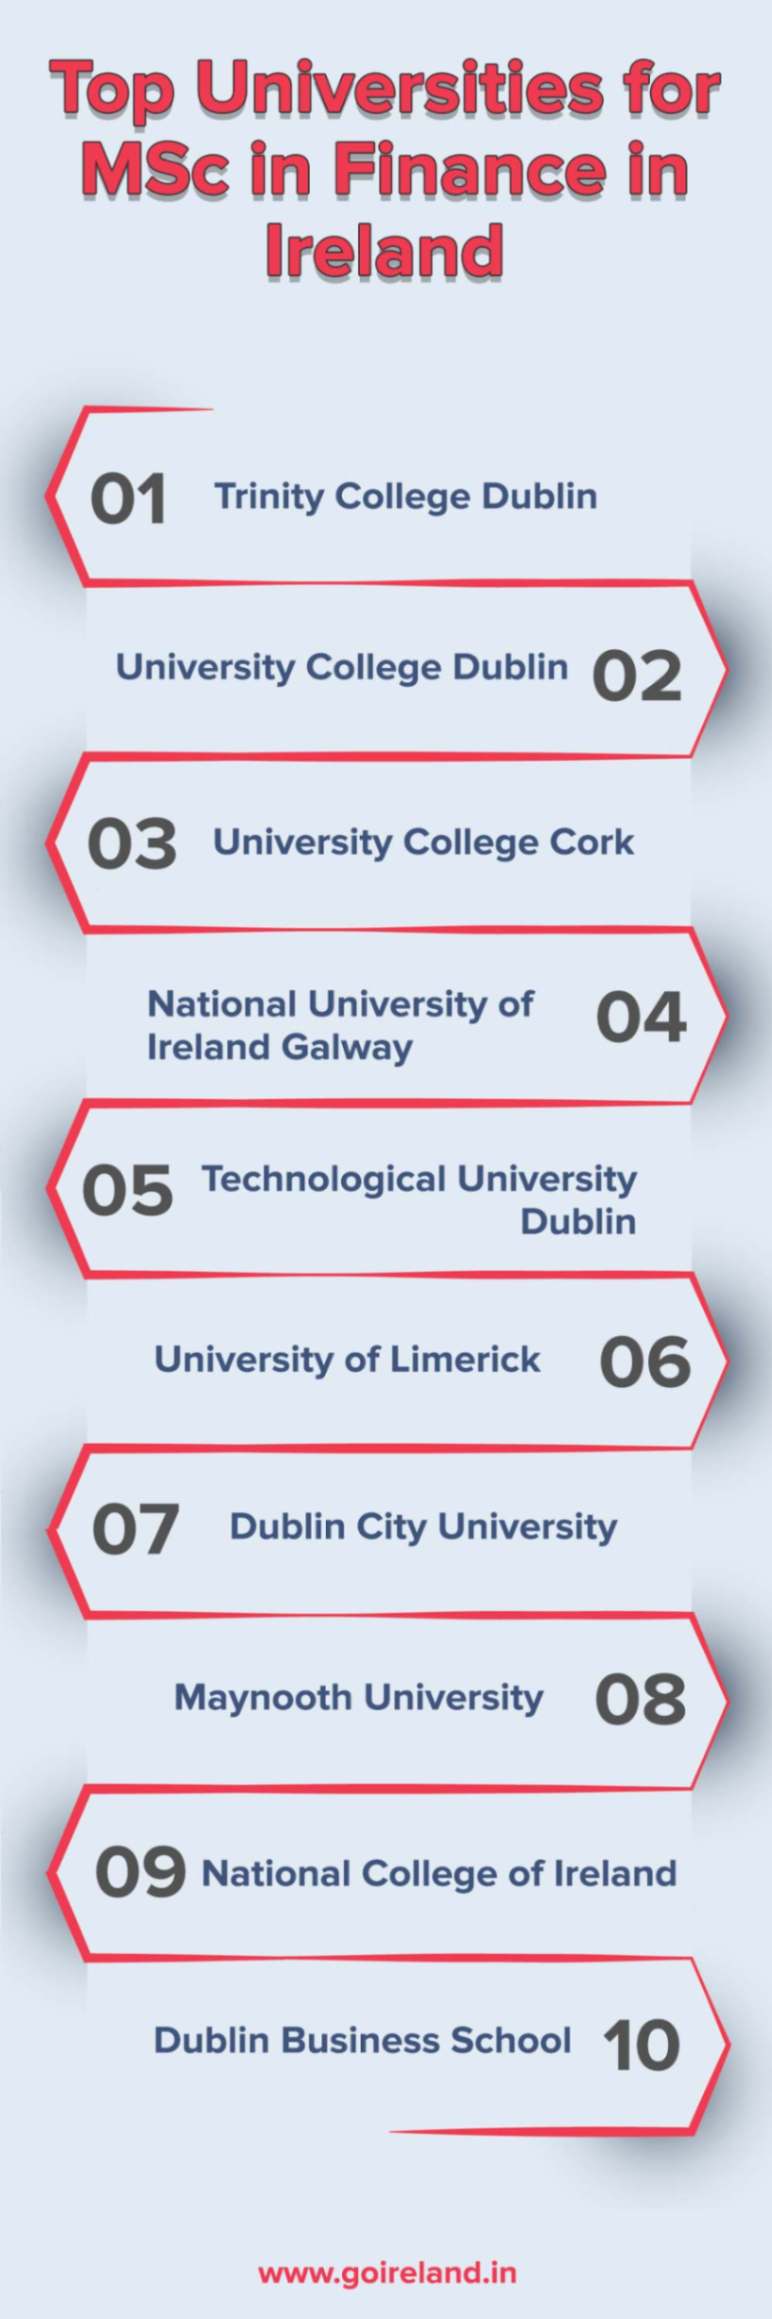 Top Universities for MSc in Finance in Ireland